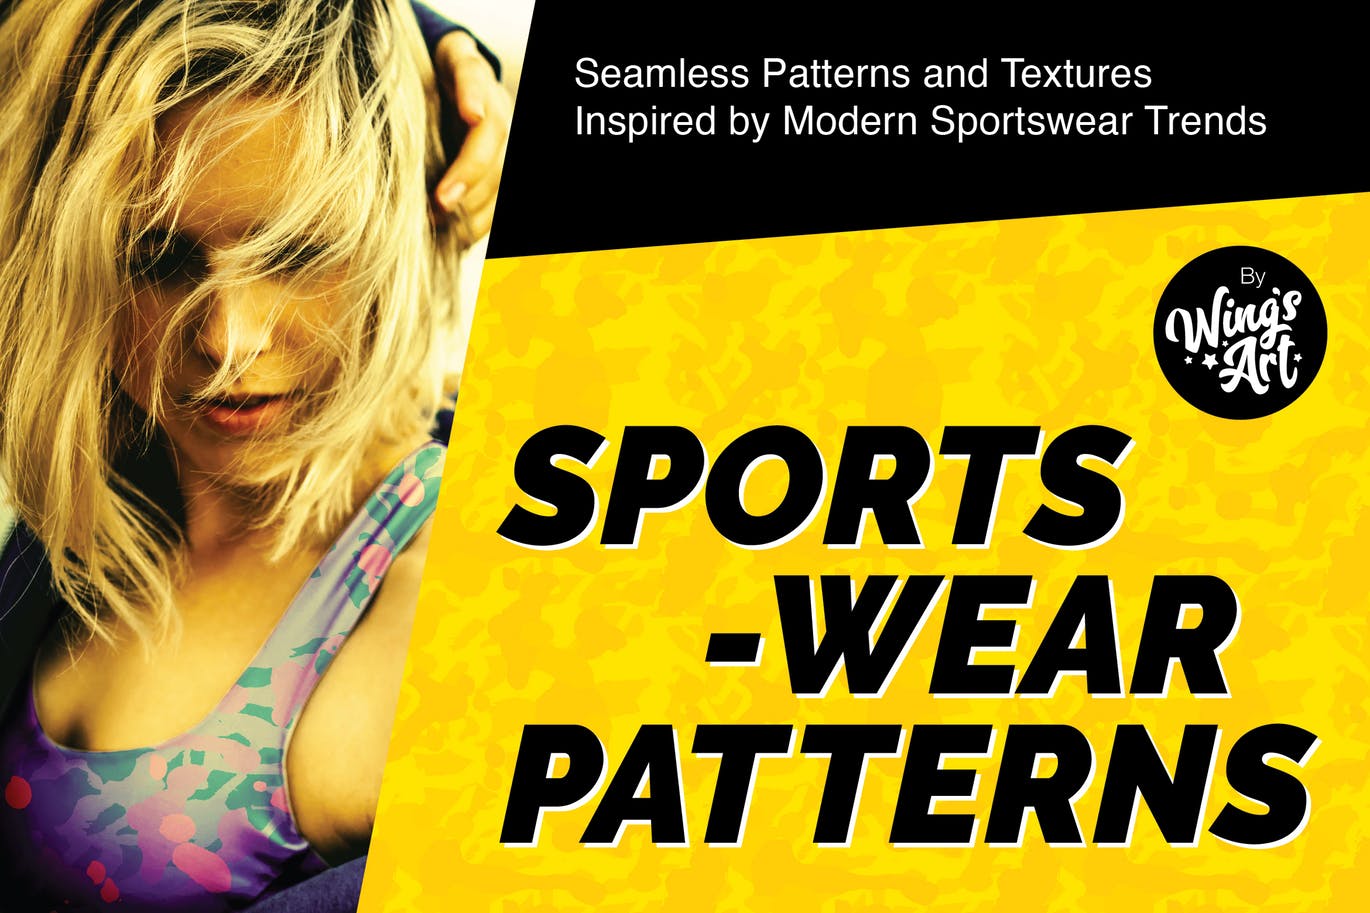 城市体育迷彩图案纹理设计素材 Urban Sports Camouflage Patterns插图